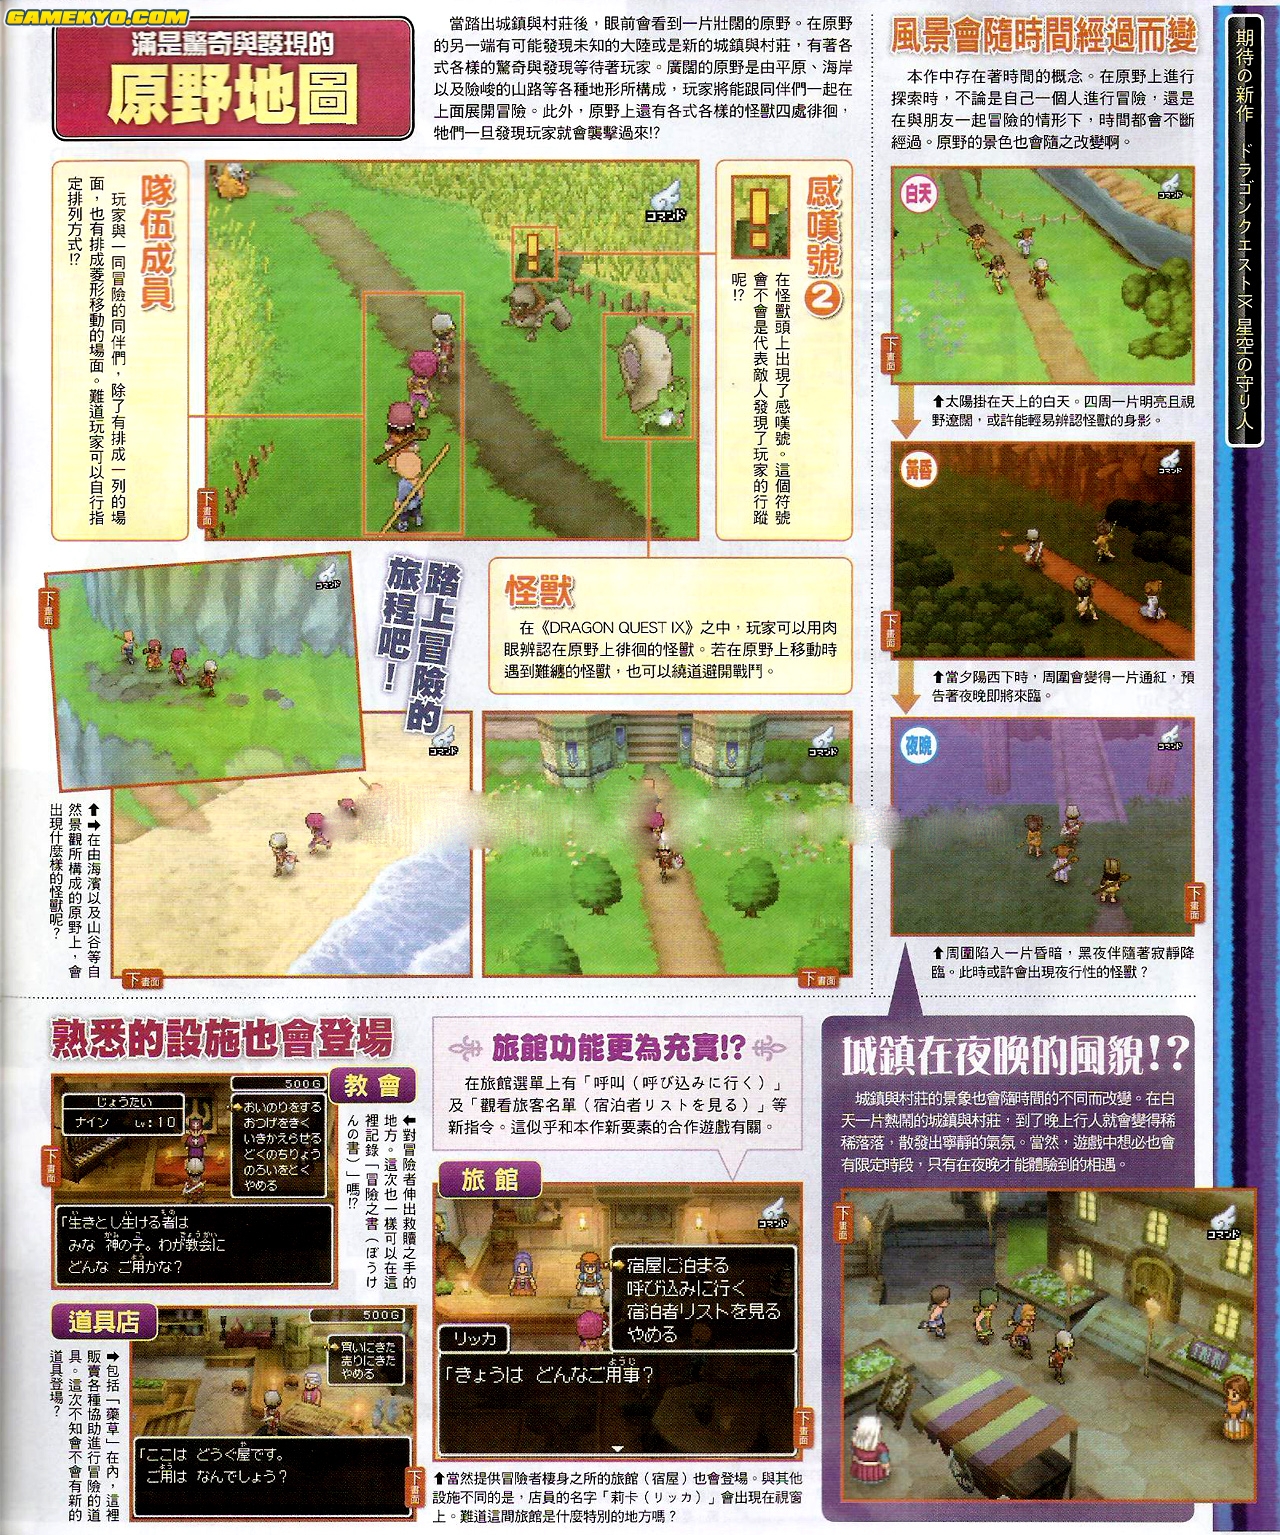 Dragon Quest IX new screenshots